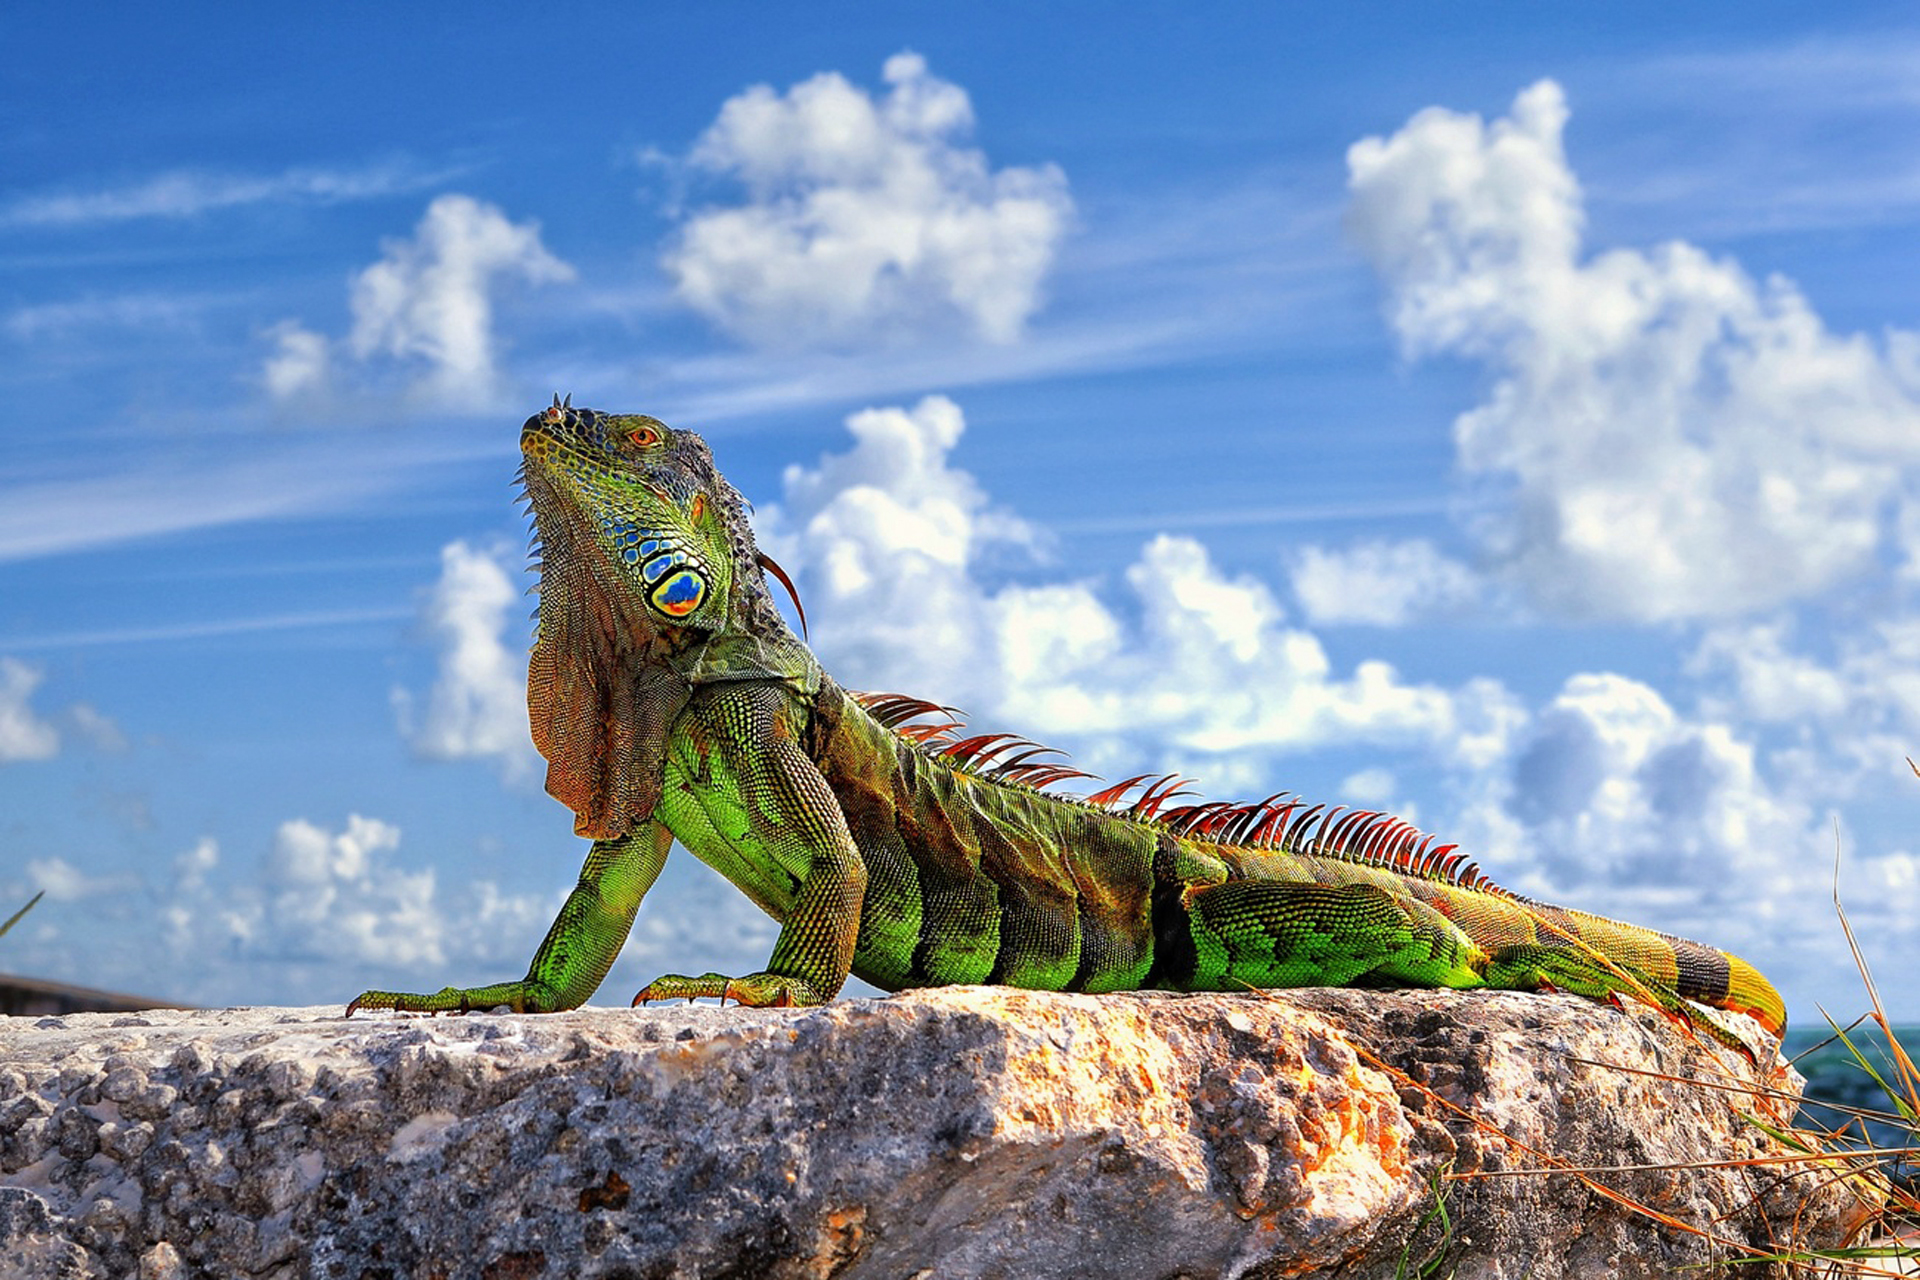 iguana berkembang biak dengan cara